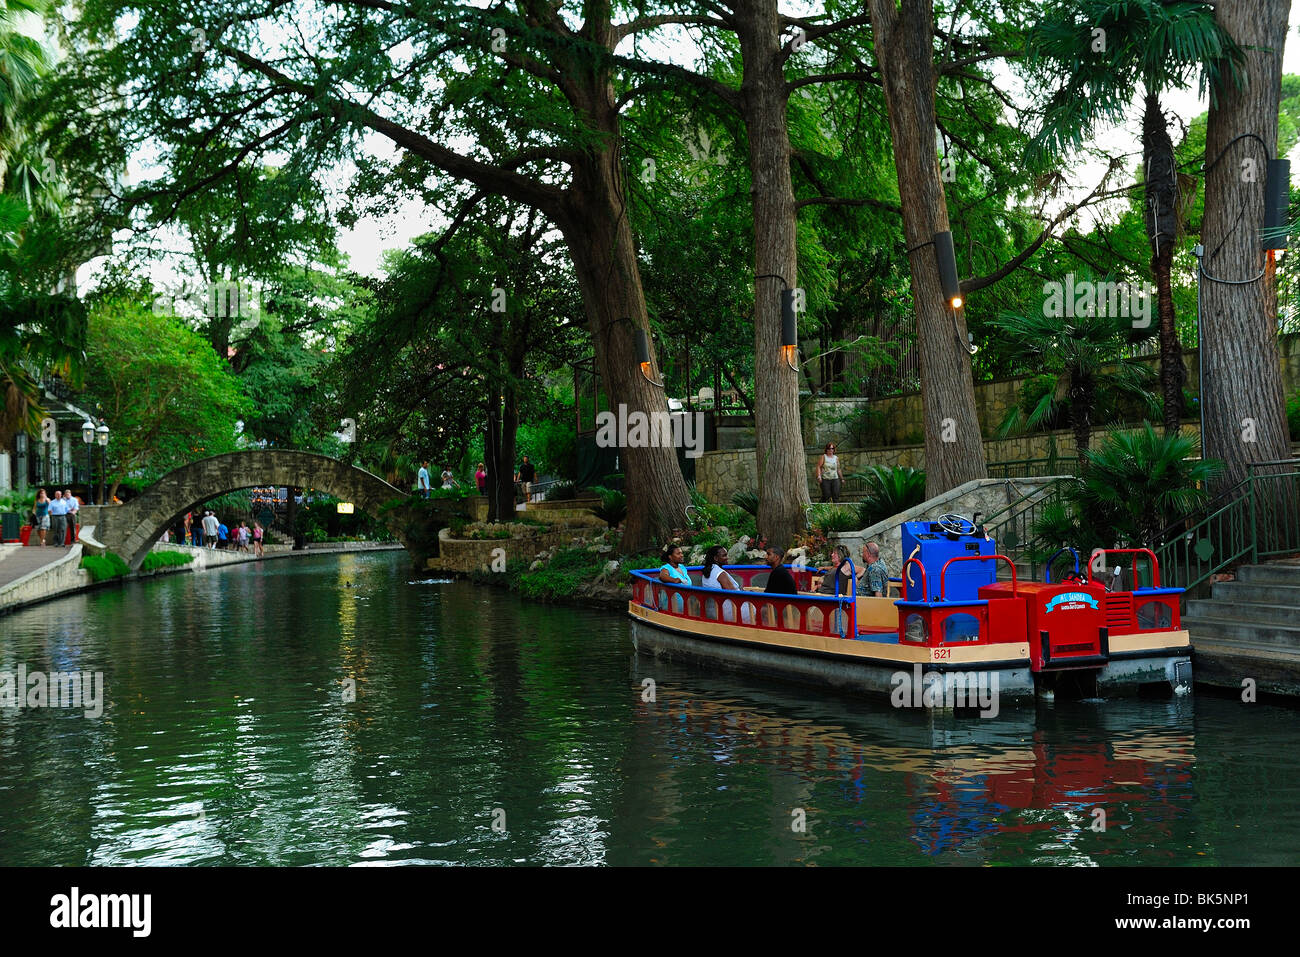 Boat guiding tourists through the riverwalk in San Antonio, Texas. Stock Photo